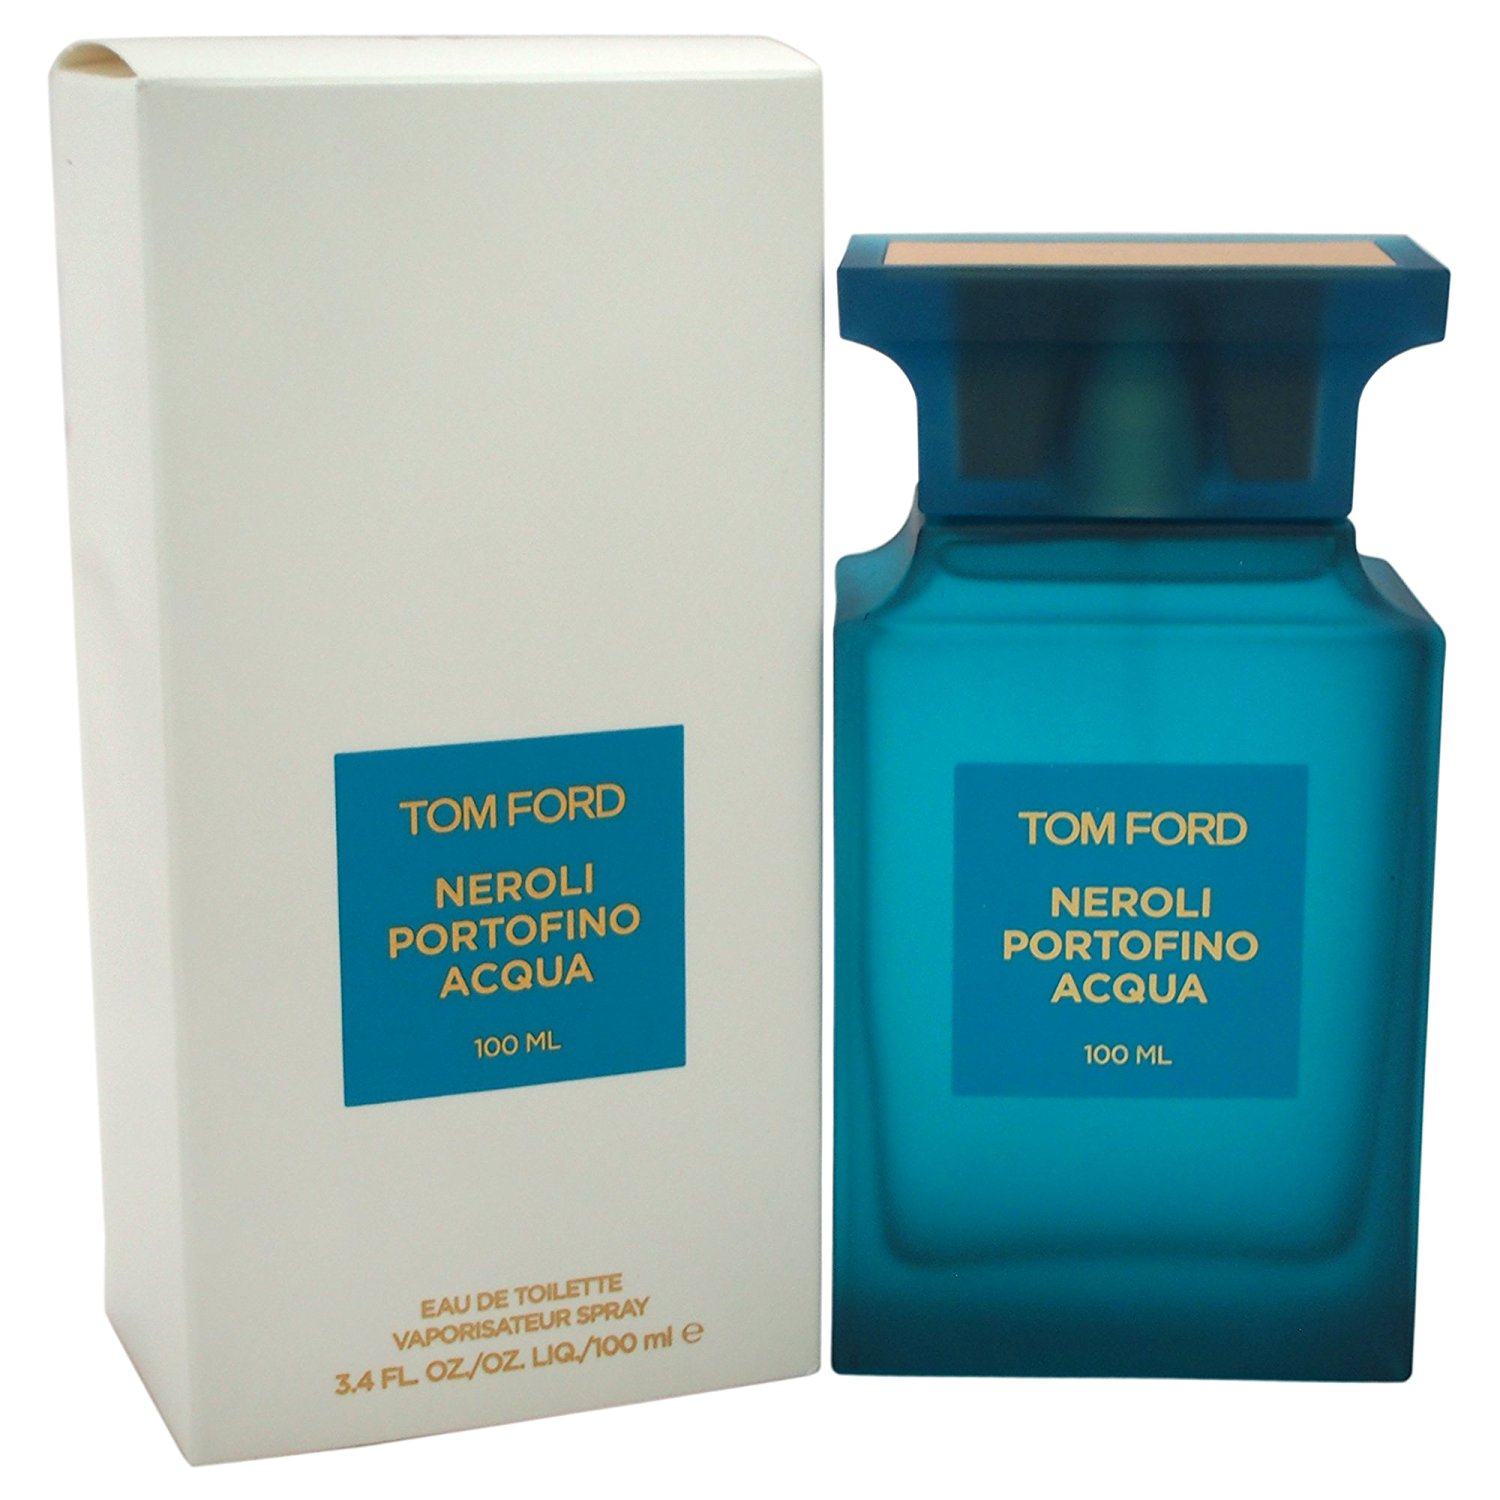 Tom Ford Neroli Portofino Acqua  - Nước hoa cao cấp, chính  hãng giá tốt, mẫu mới